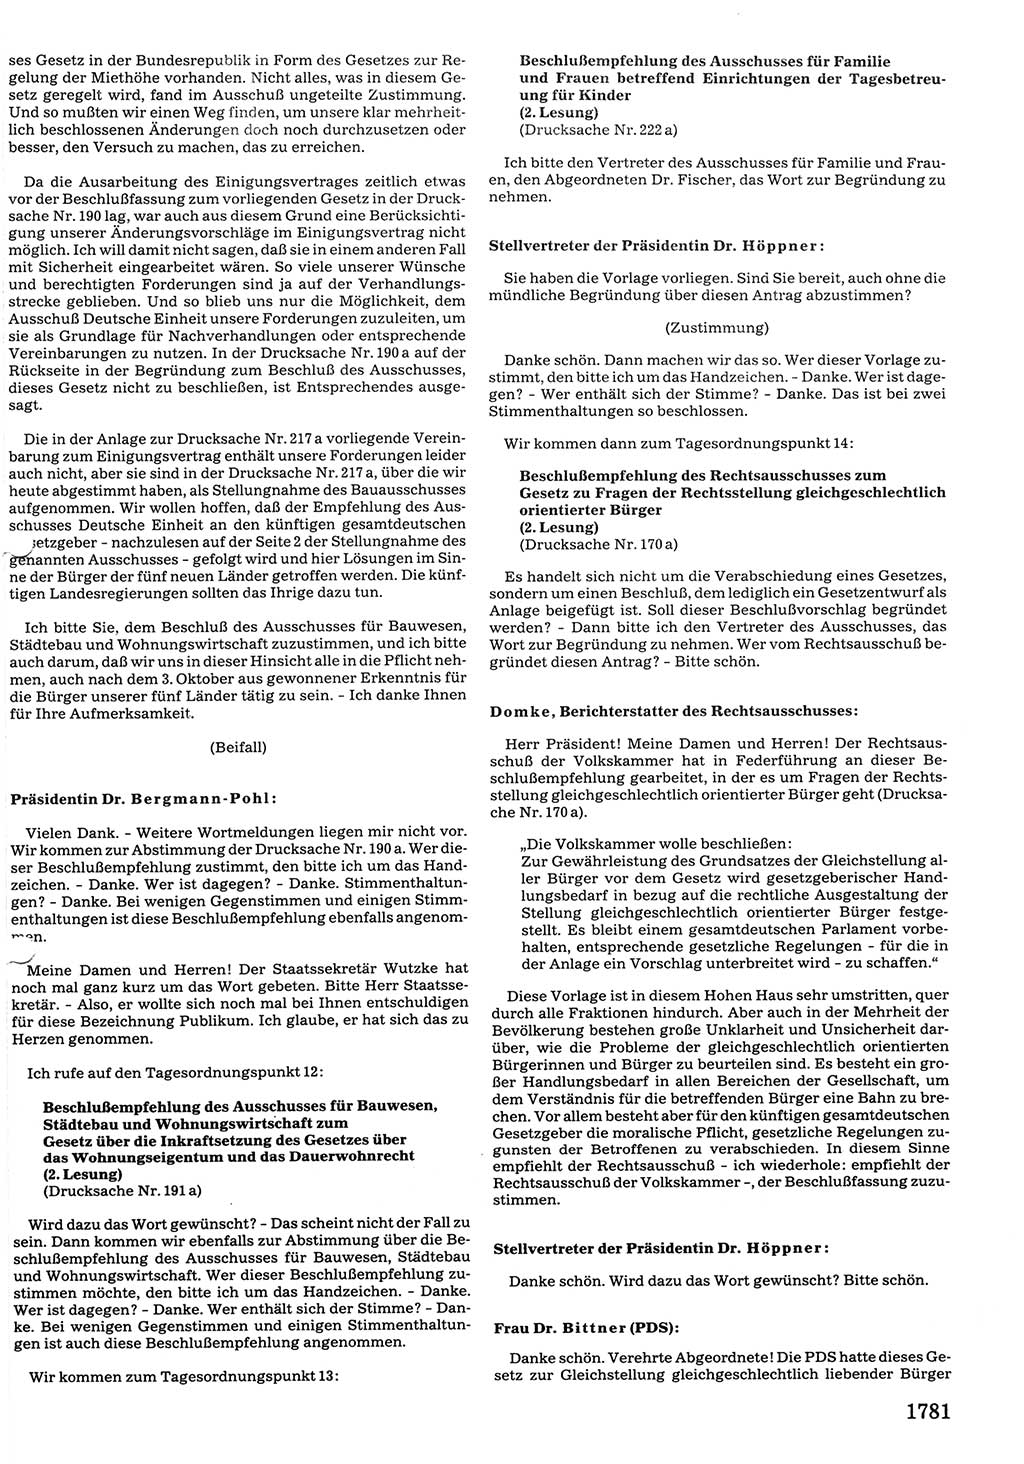 Tagungen der Volkskammer (VK) der Deutschen Demokratischen Republik (DDR), 10. Wahlperiode 1990, Seite 1781 (VK. DDR 10. WP. 1990, Prot. Tg. 1-38, 5.4.-2.10.1990, S. 1781)